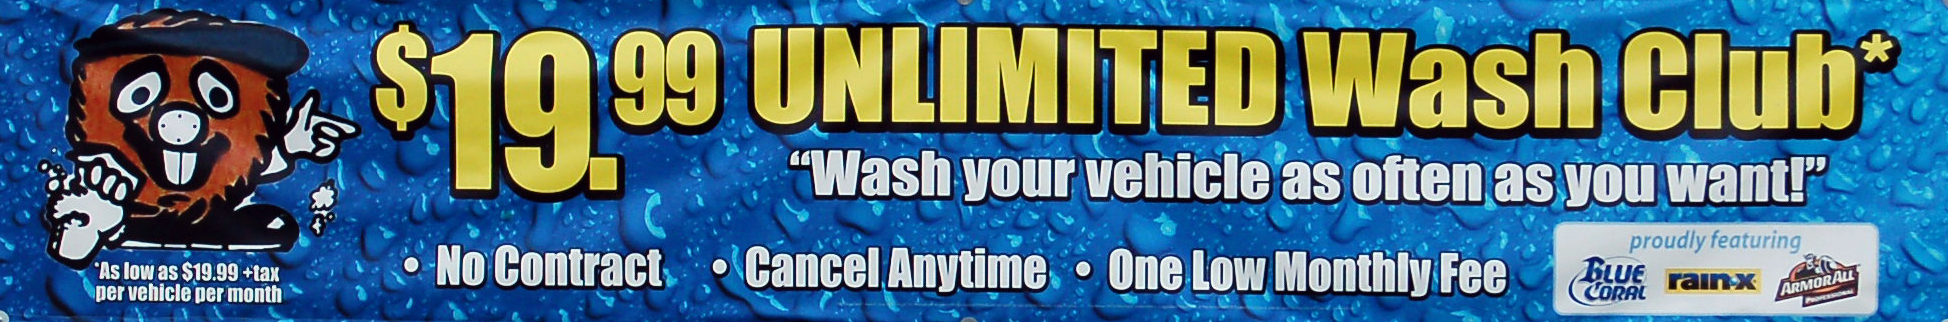 unlimited-wash-club-banner